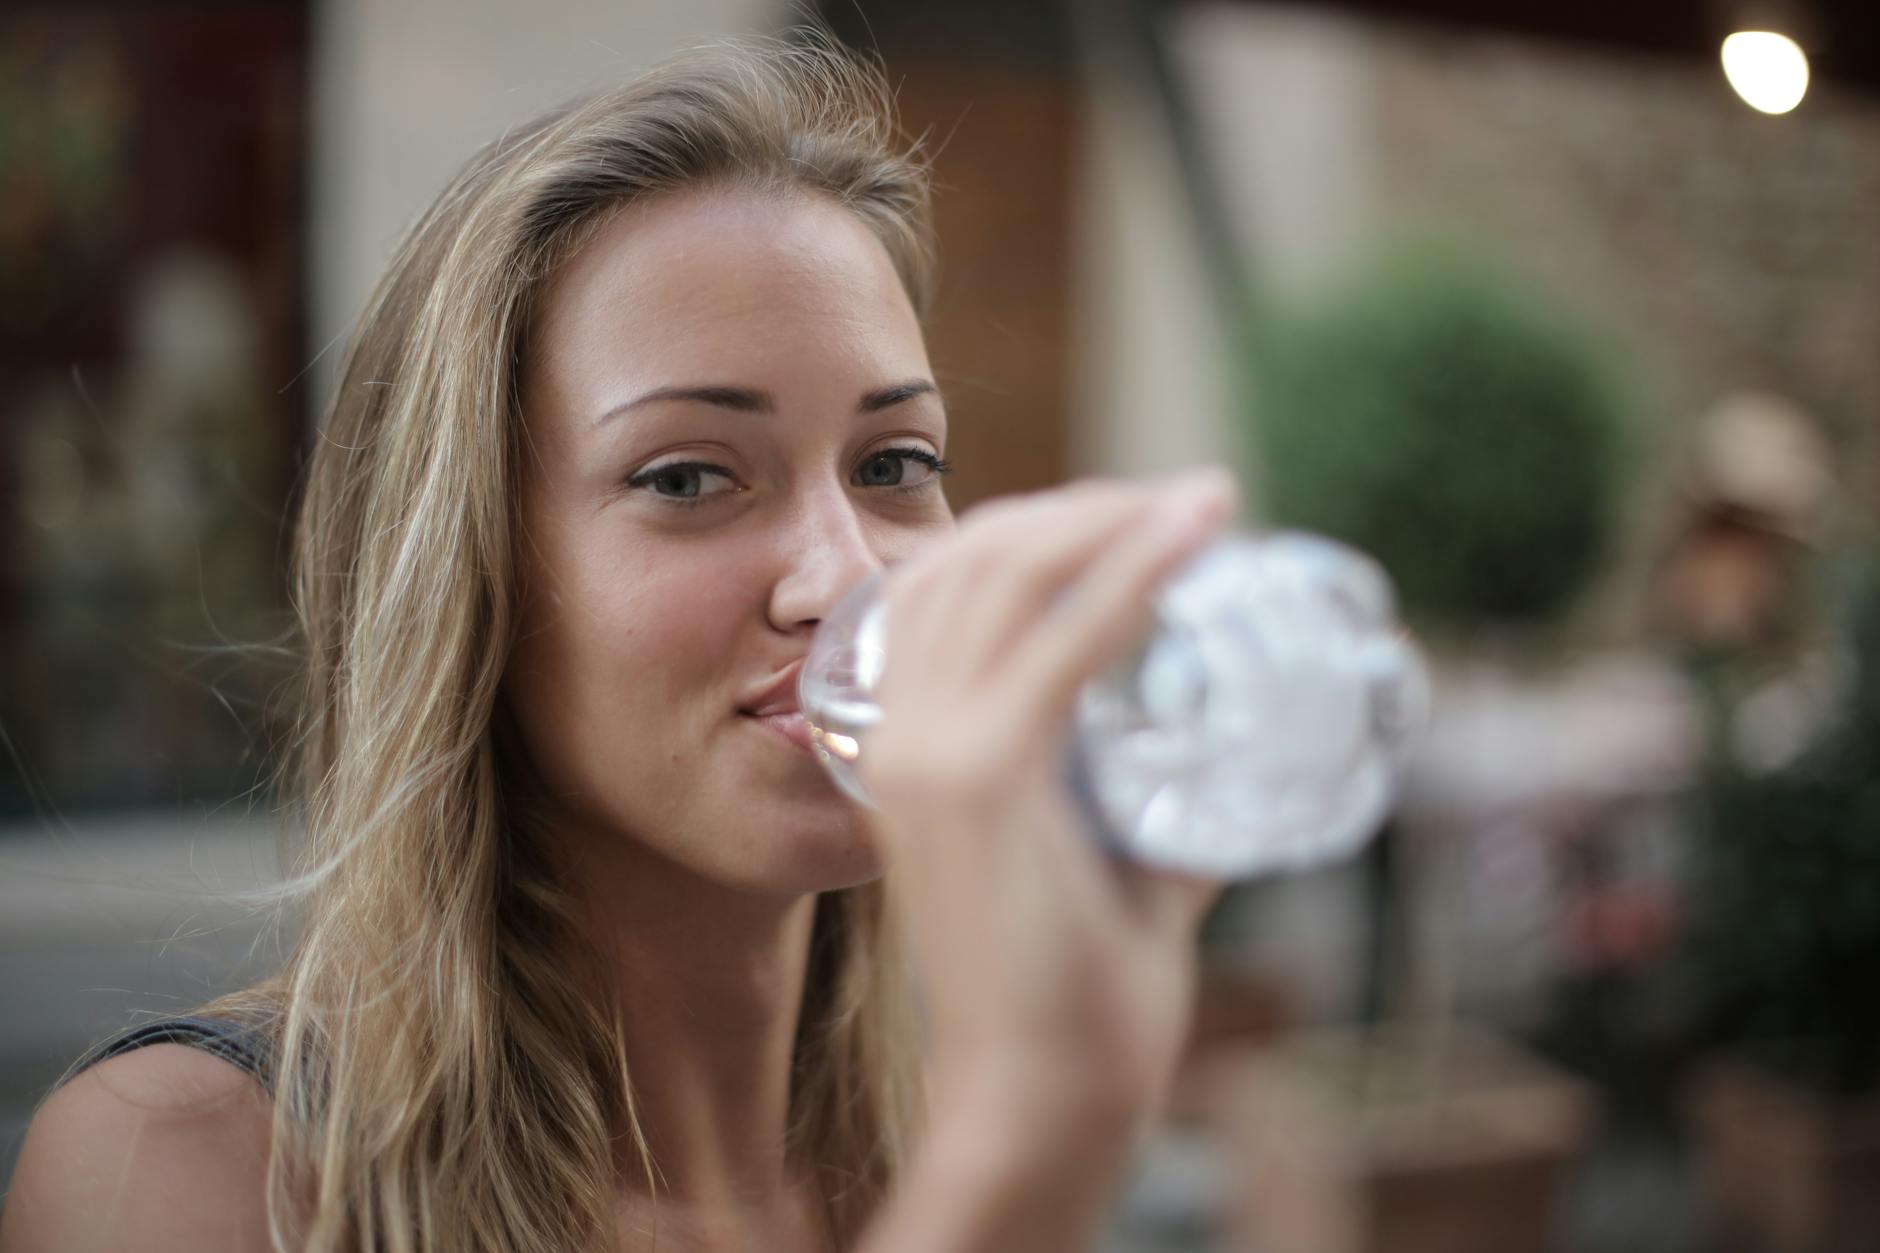 Mulher bebendo água na garrafa pet olhando para a câmera. Beber água é primordial para ter uma alimentação saudável!